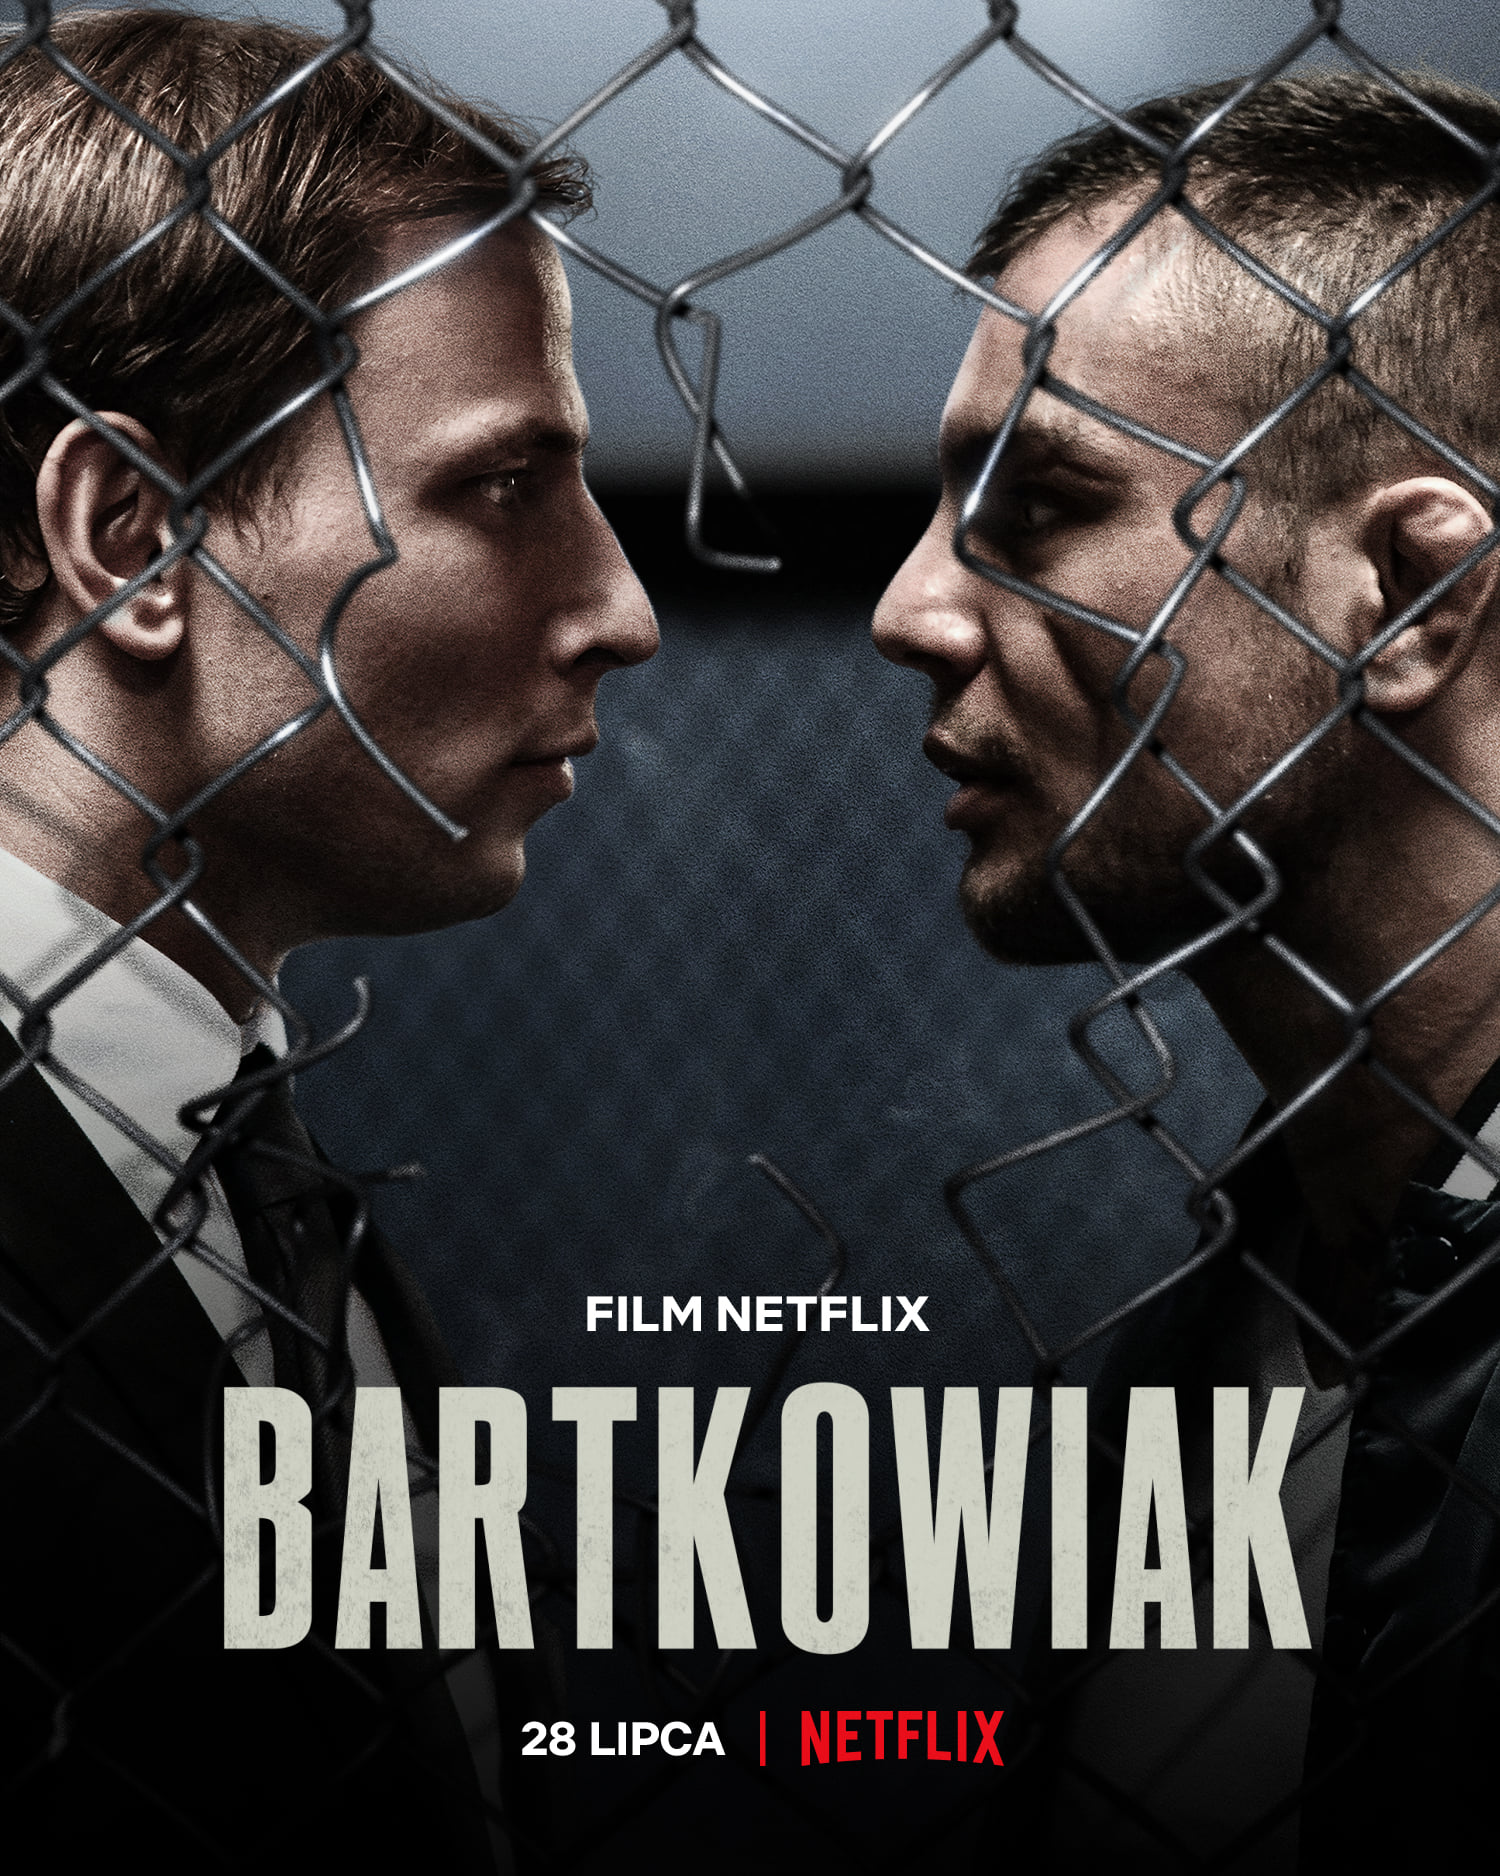 Bartkowiak บาร์ตโคเวียก: แค้นนักสู้ (2021)